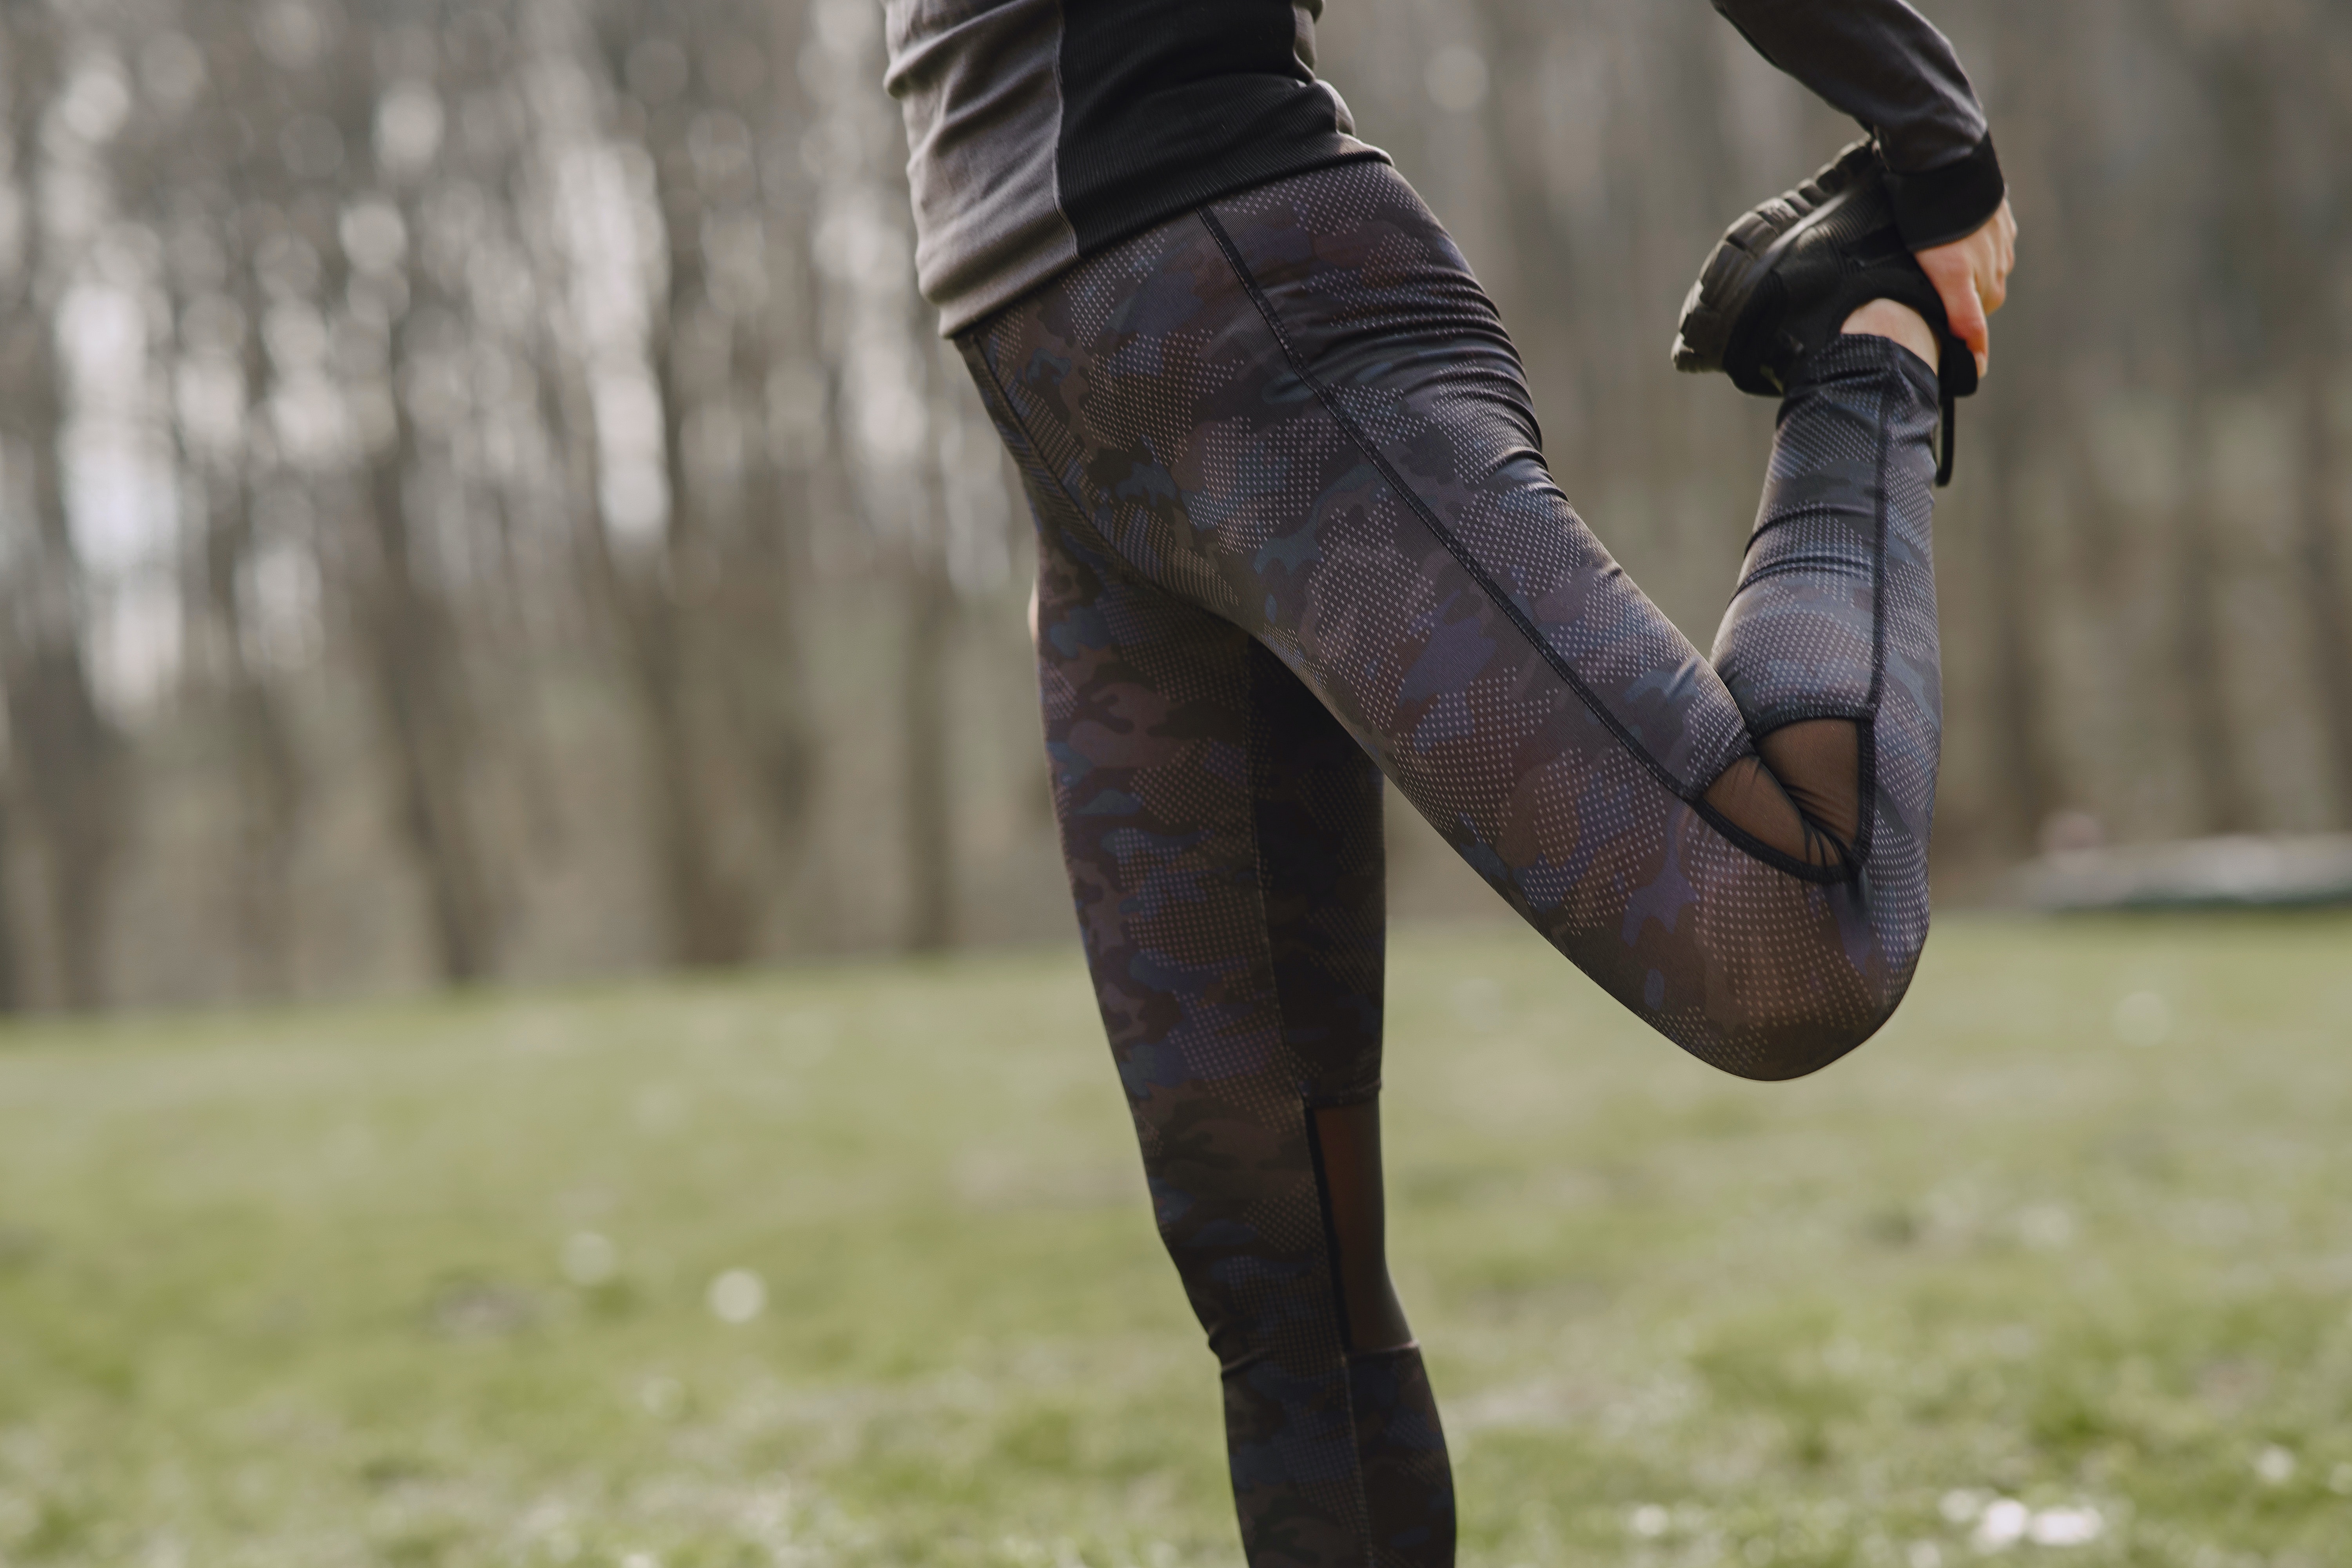 stiramento muscolare cause e rimedi - donna vestita da running che fa stretching per allungare i muscoli della coscia